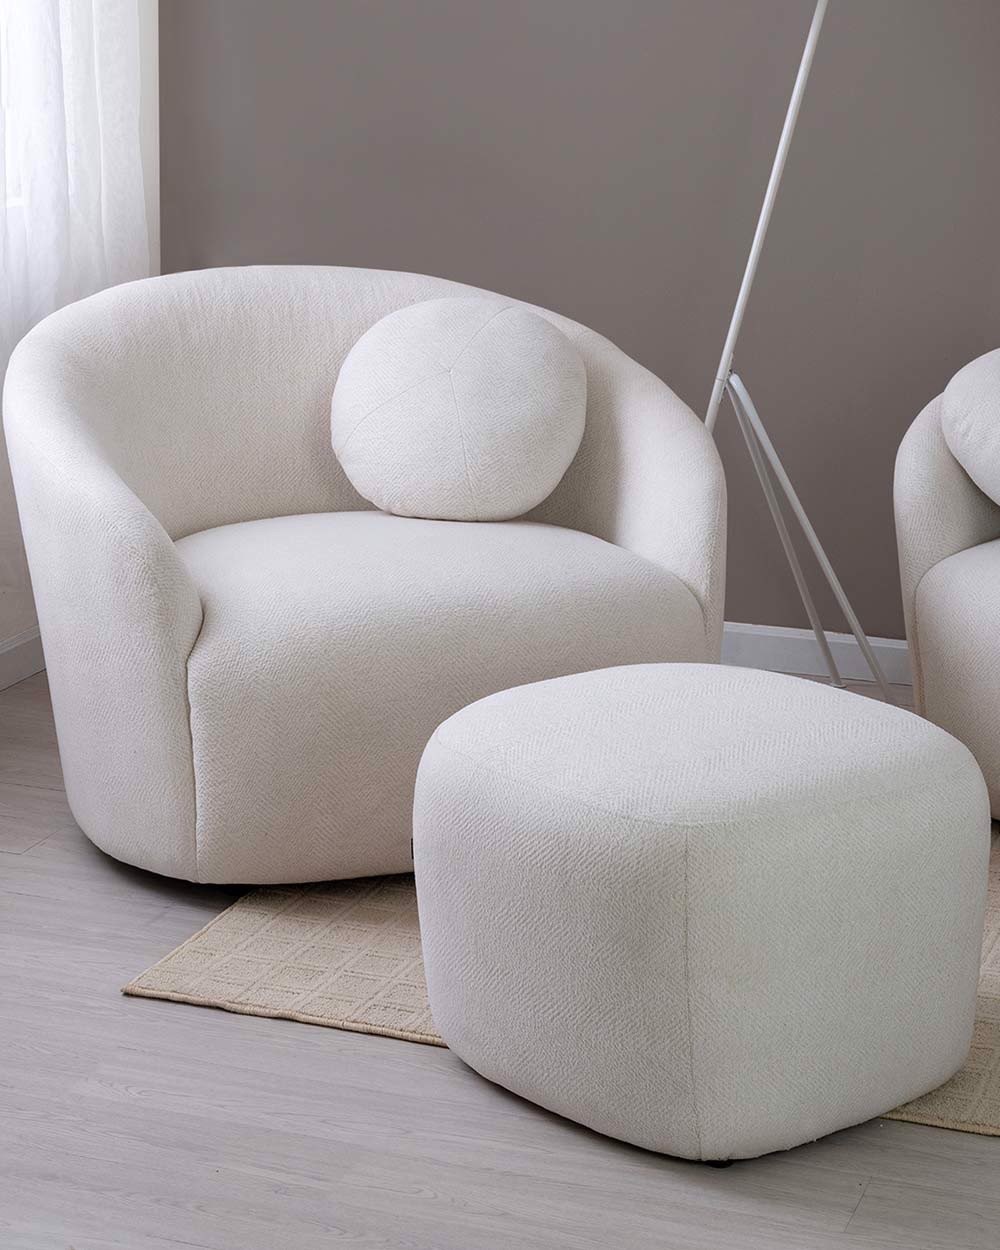 Ghế sofa đơn giúp tổng thể thiết kế trở nên hoàn hảo